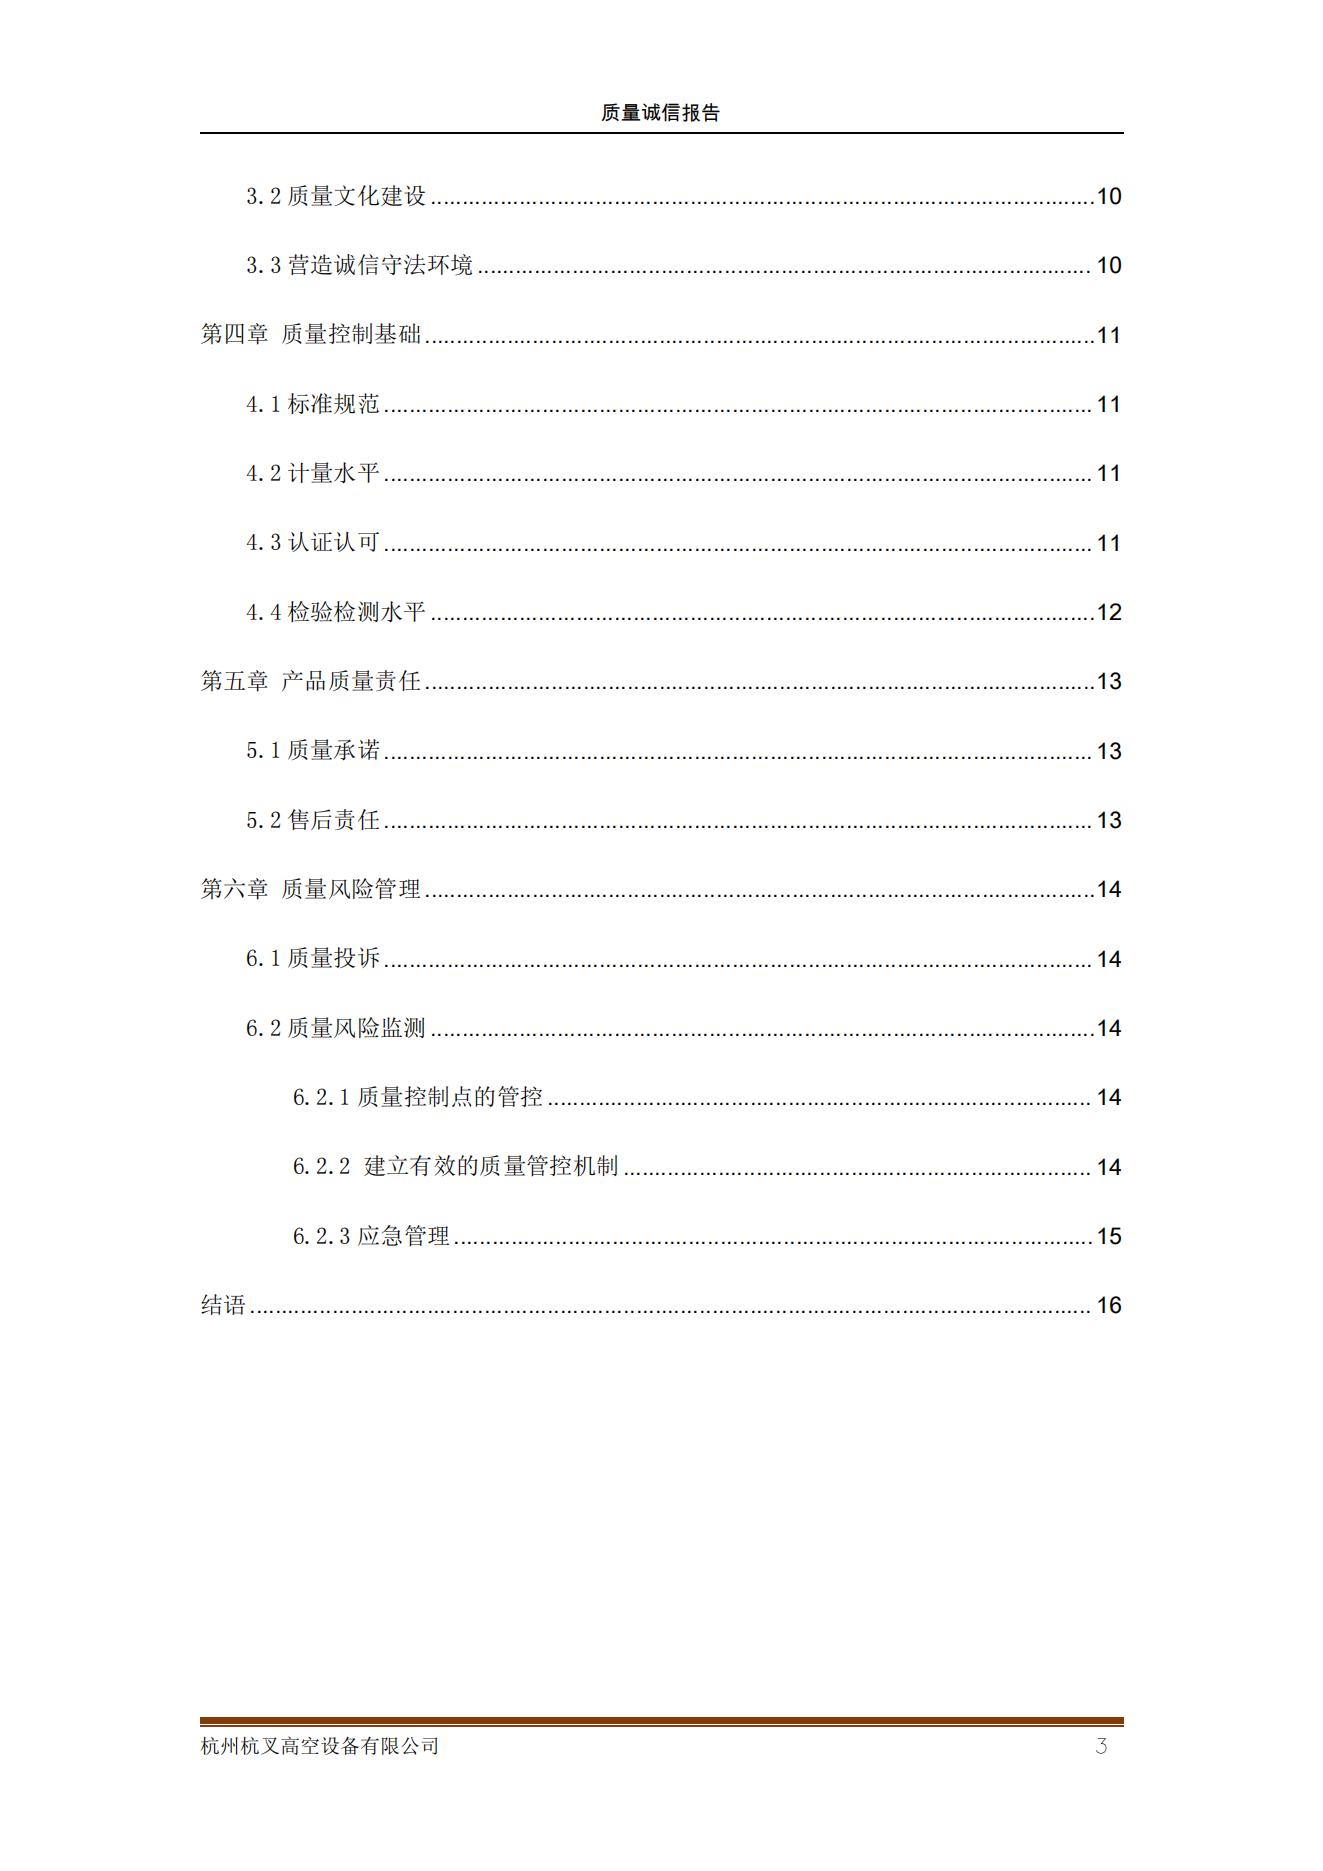 杭州杭叉高空设备公司2021年质量诚信报告(图3)